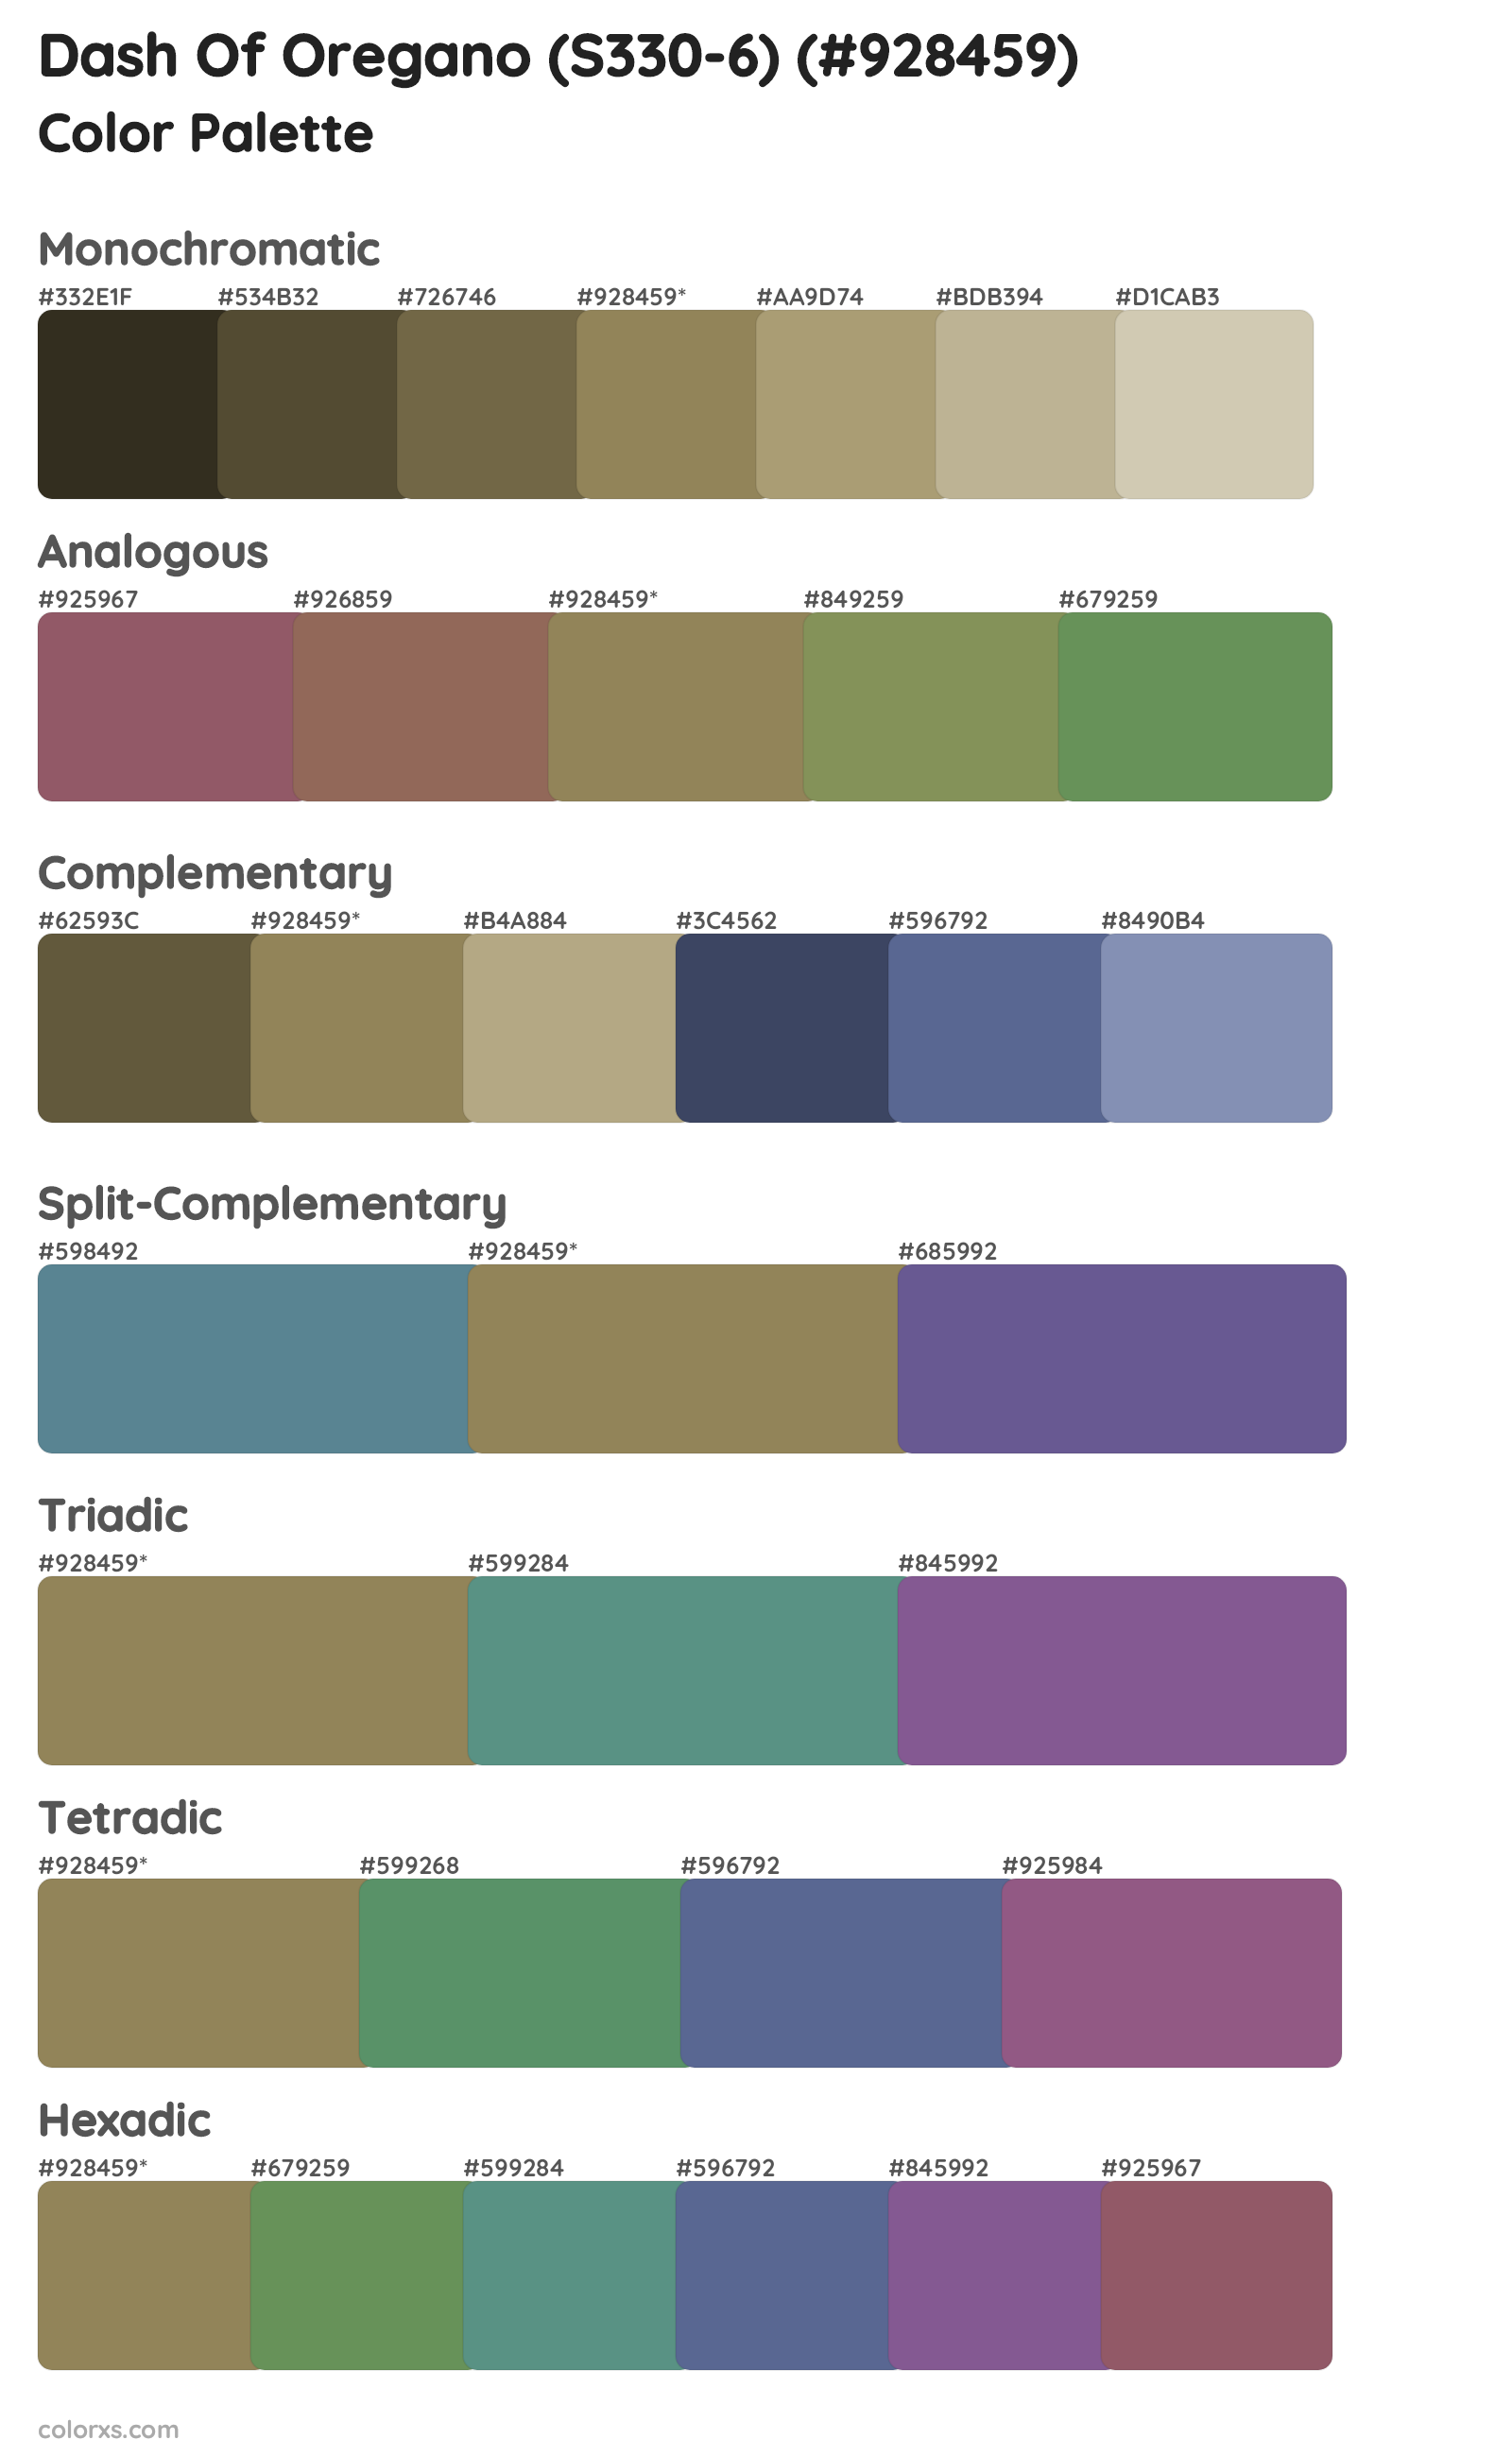 Dash Of Oregano (S330-6) Color Scheme Palettes